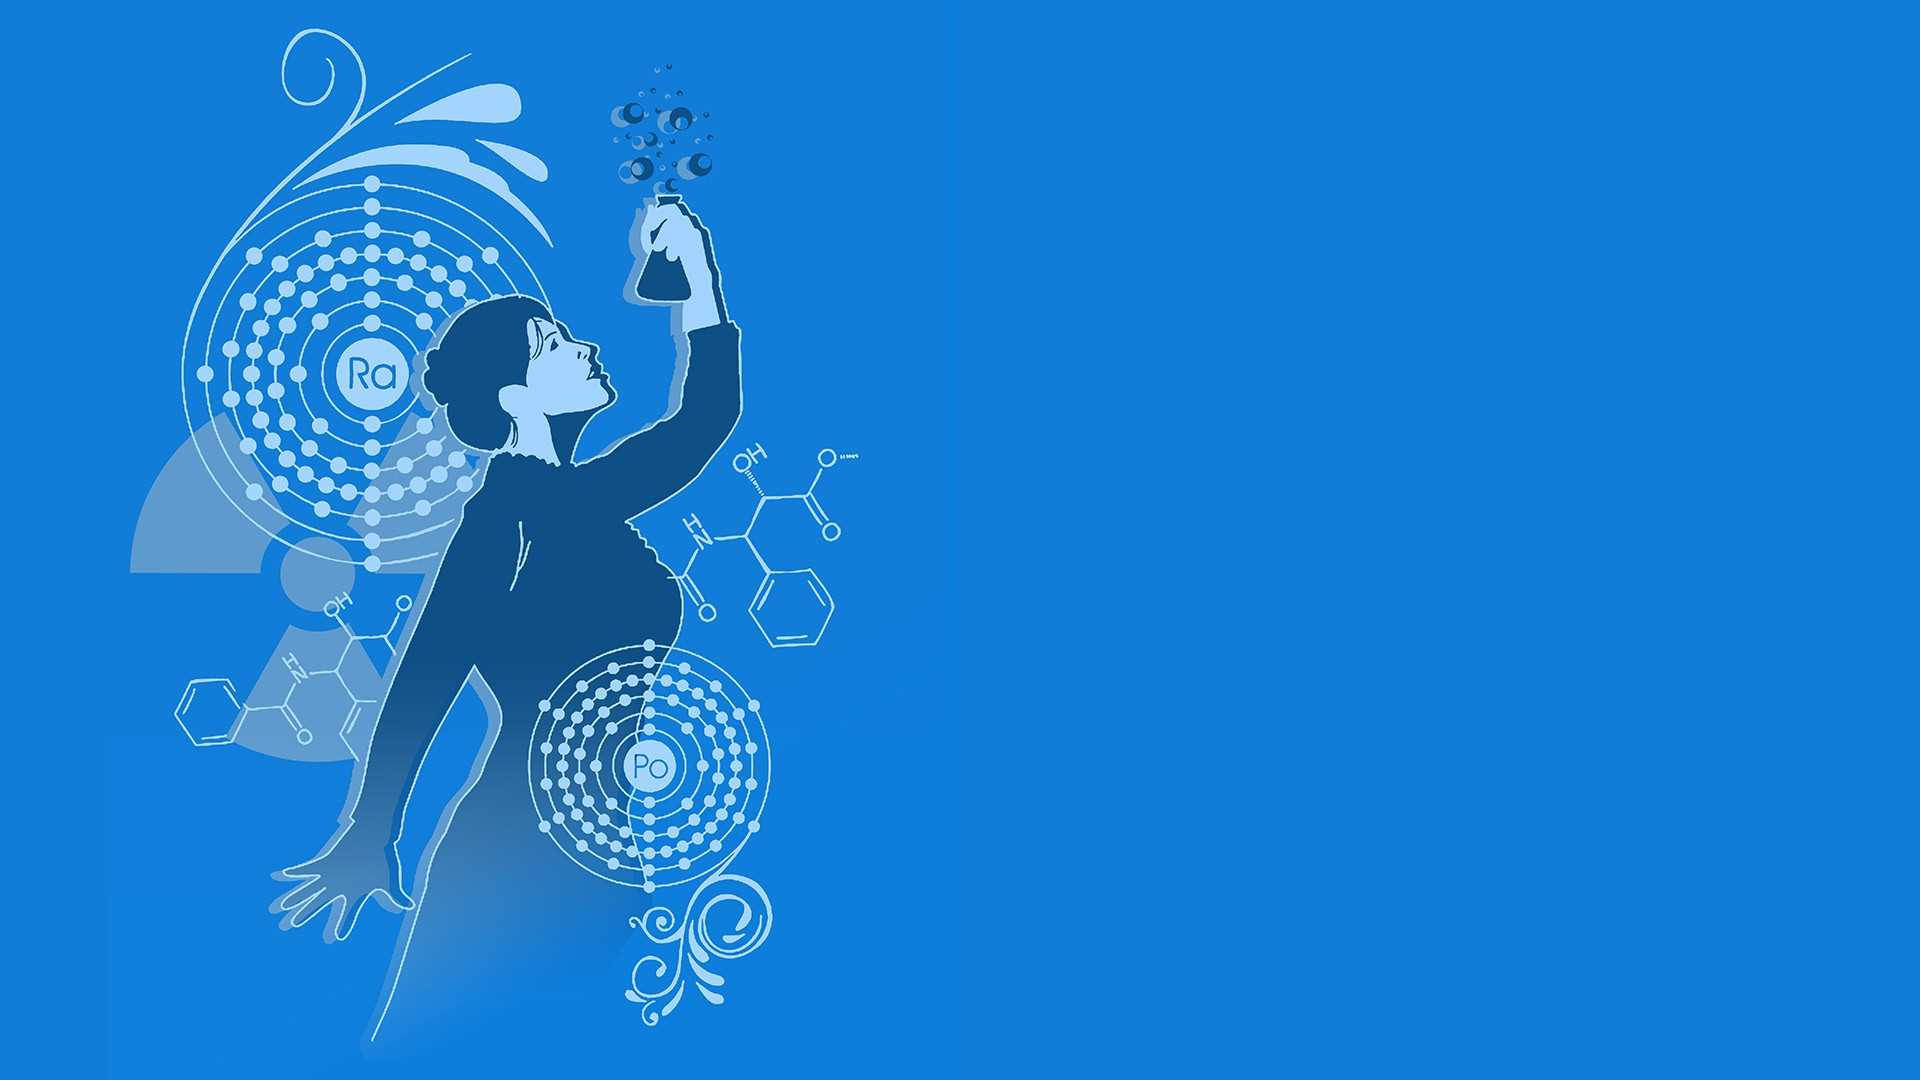 Marie Curie - Pioneer in Science Wallpaper